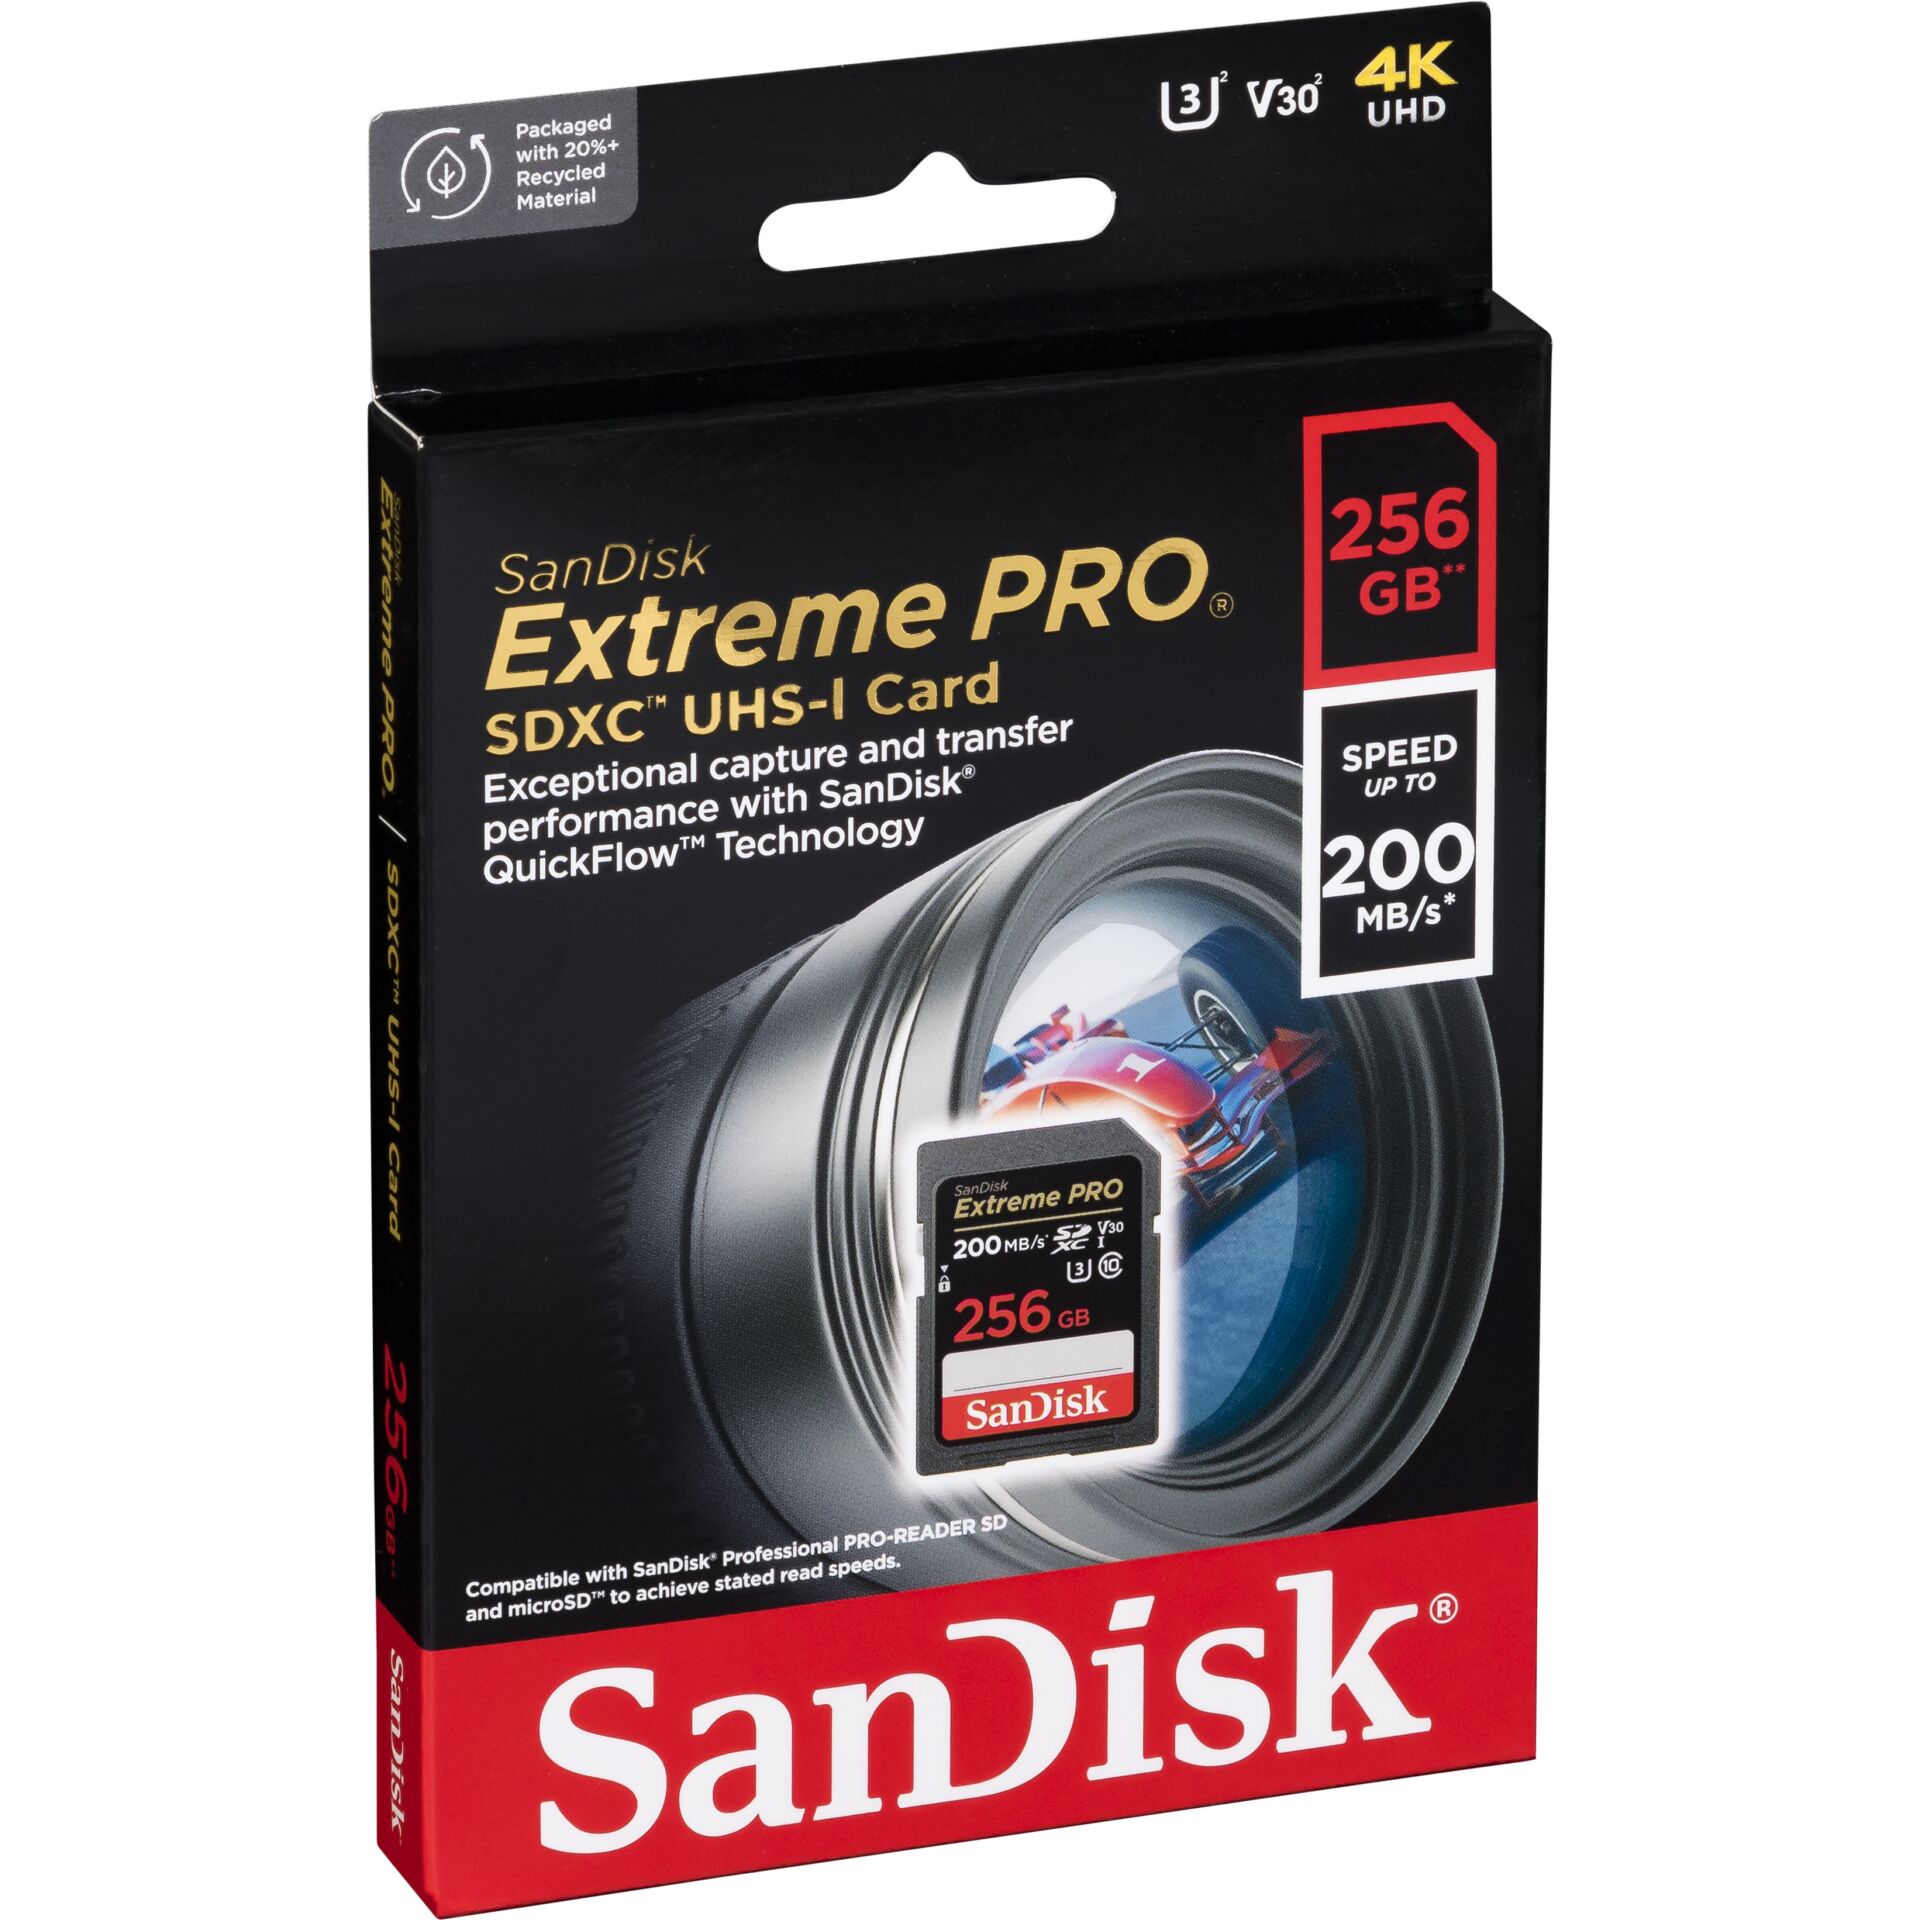 256 GB SanDisk Extreme PRO SDXC Speicherkarte, lesen: 200MB/s, schreiben: 140MB/s